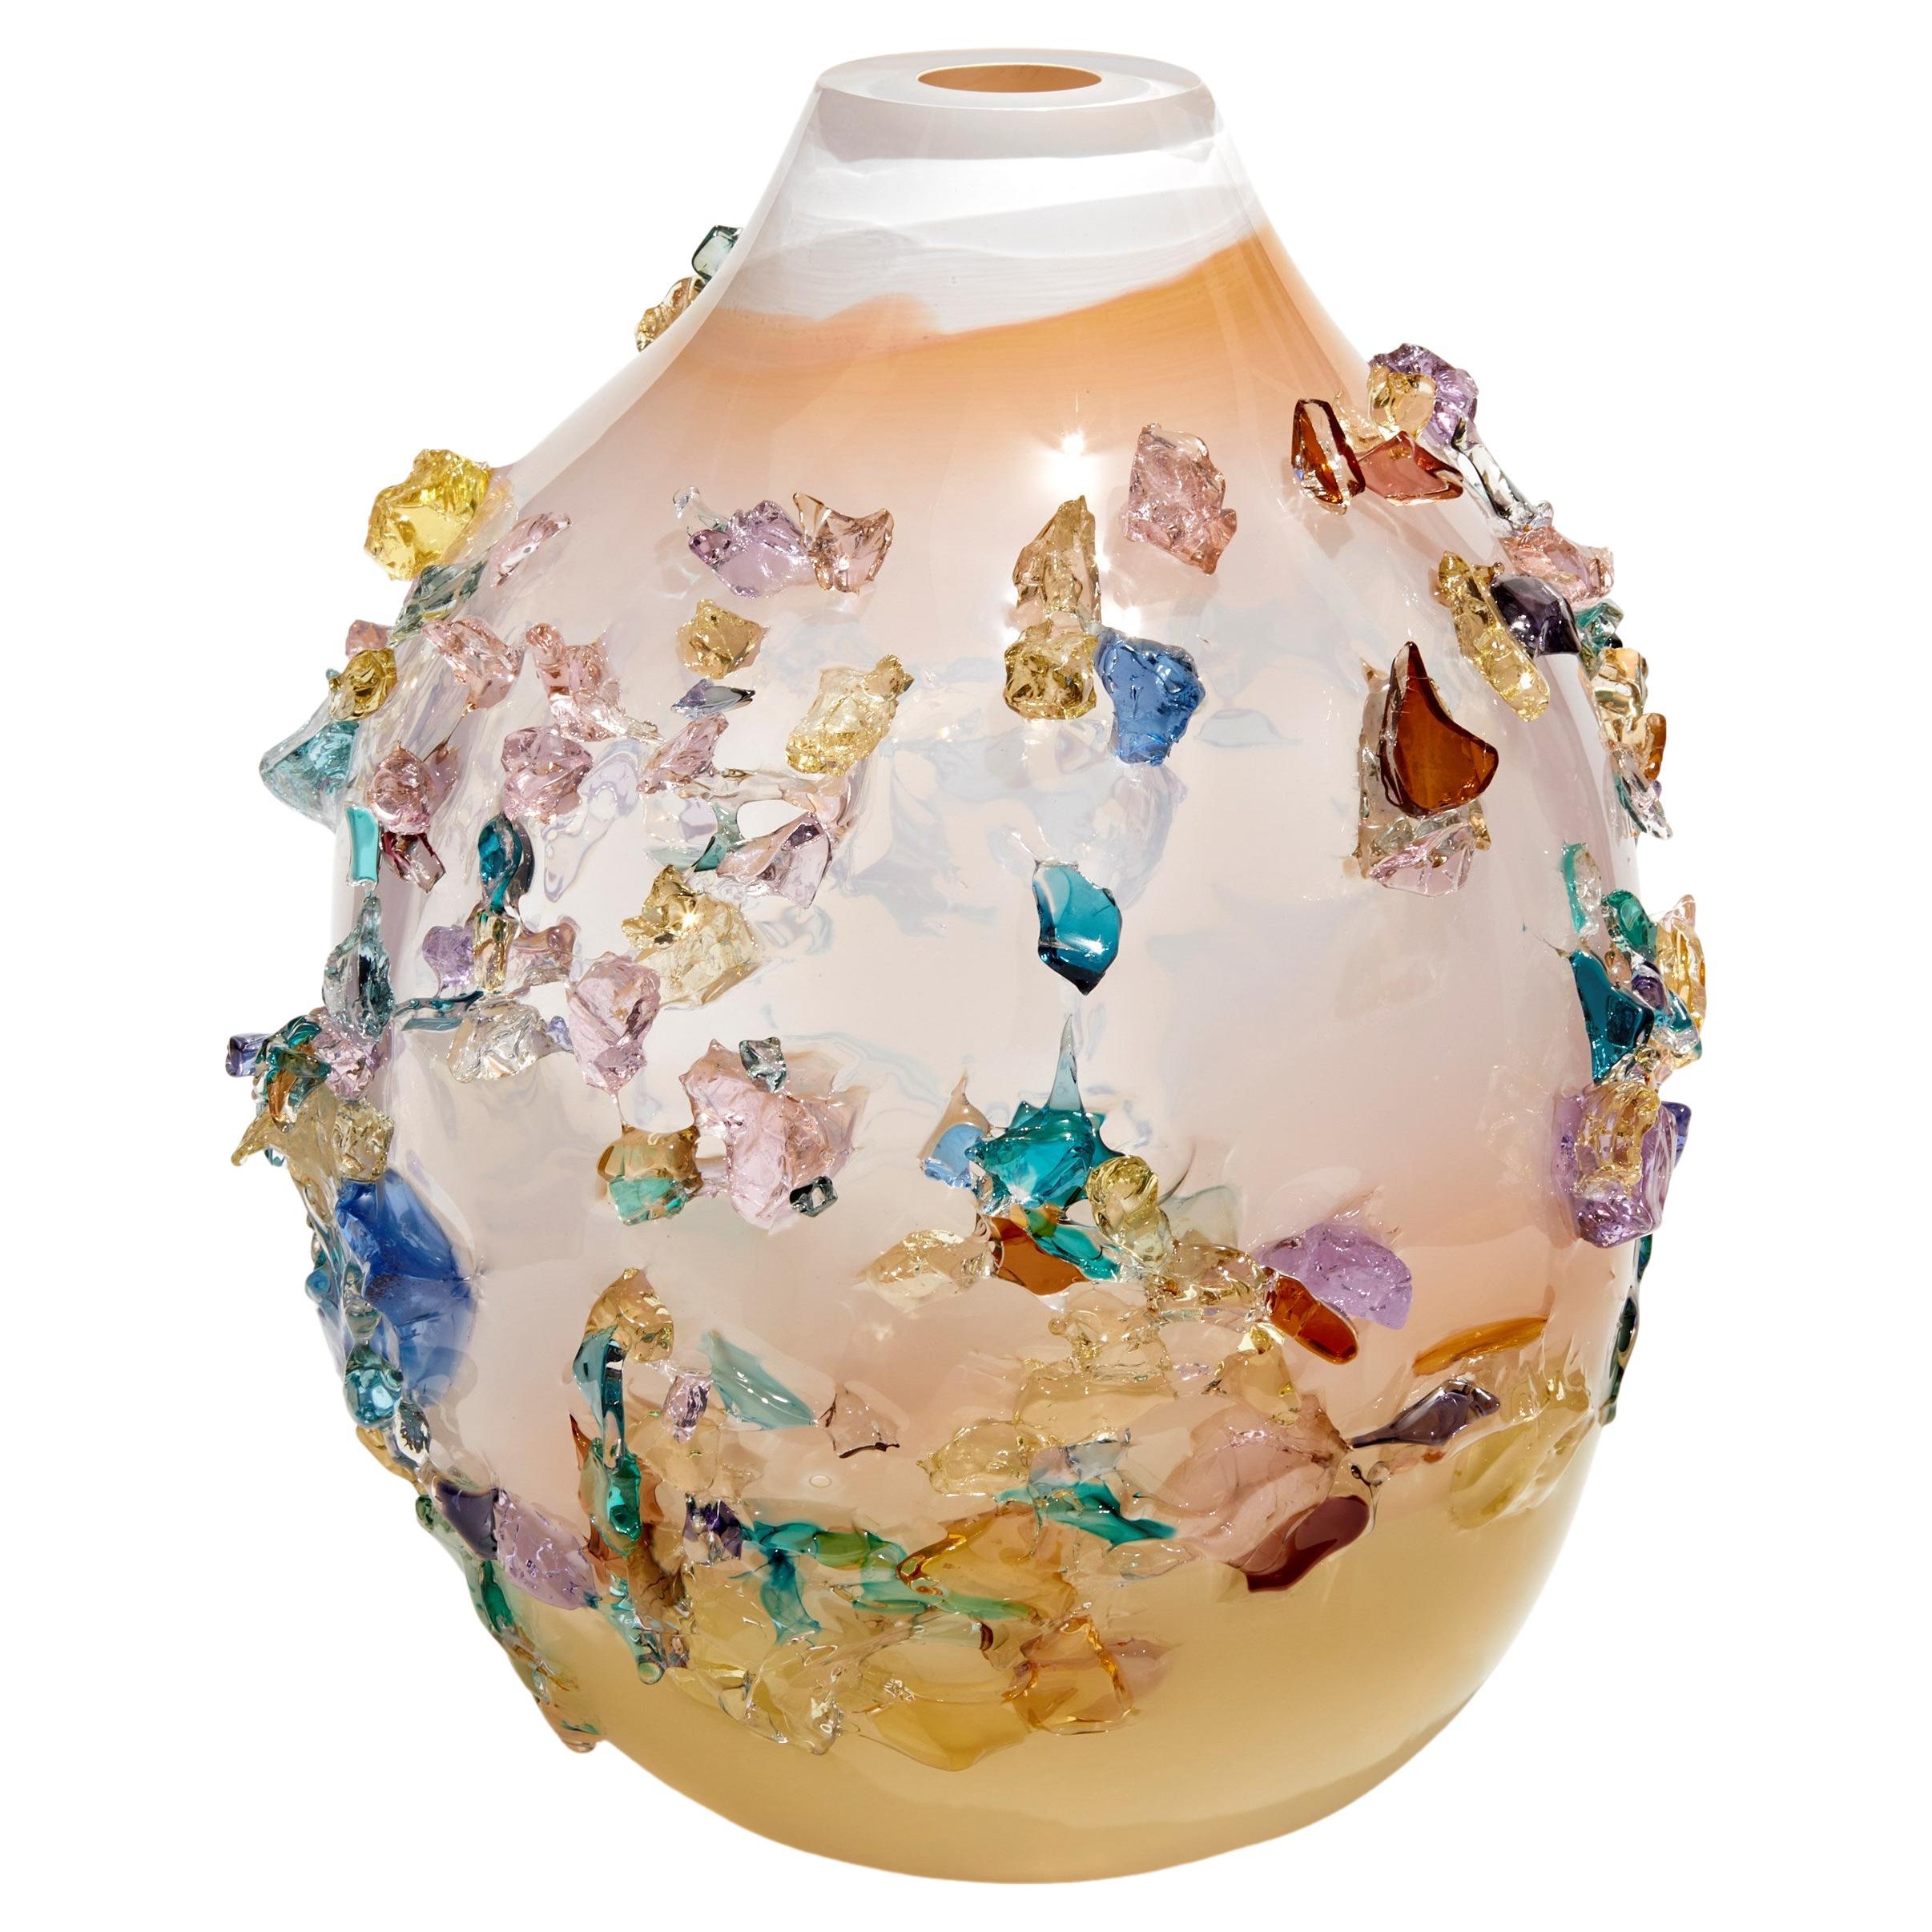 Sakura TRP21015, a Glass Vase in Corals with Mixed Colors by Maarten Vrolijk For Sale